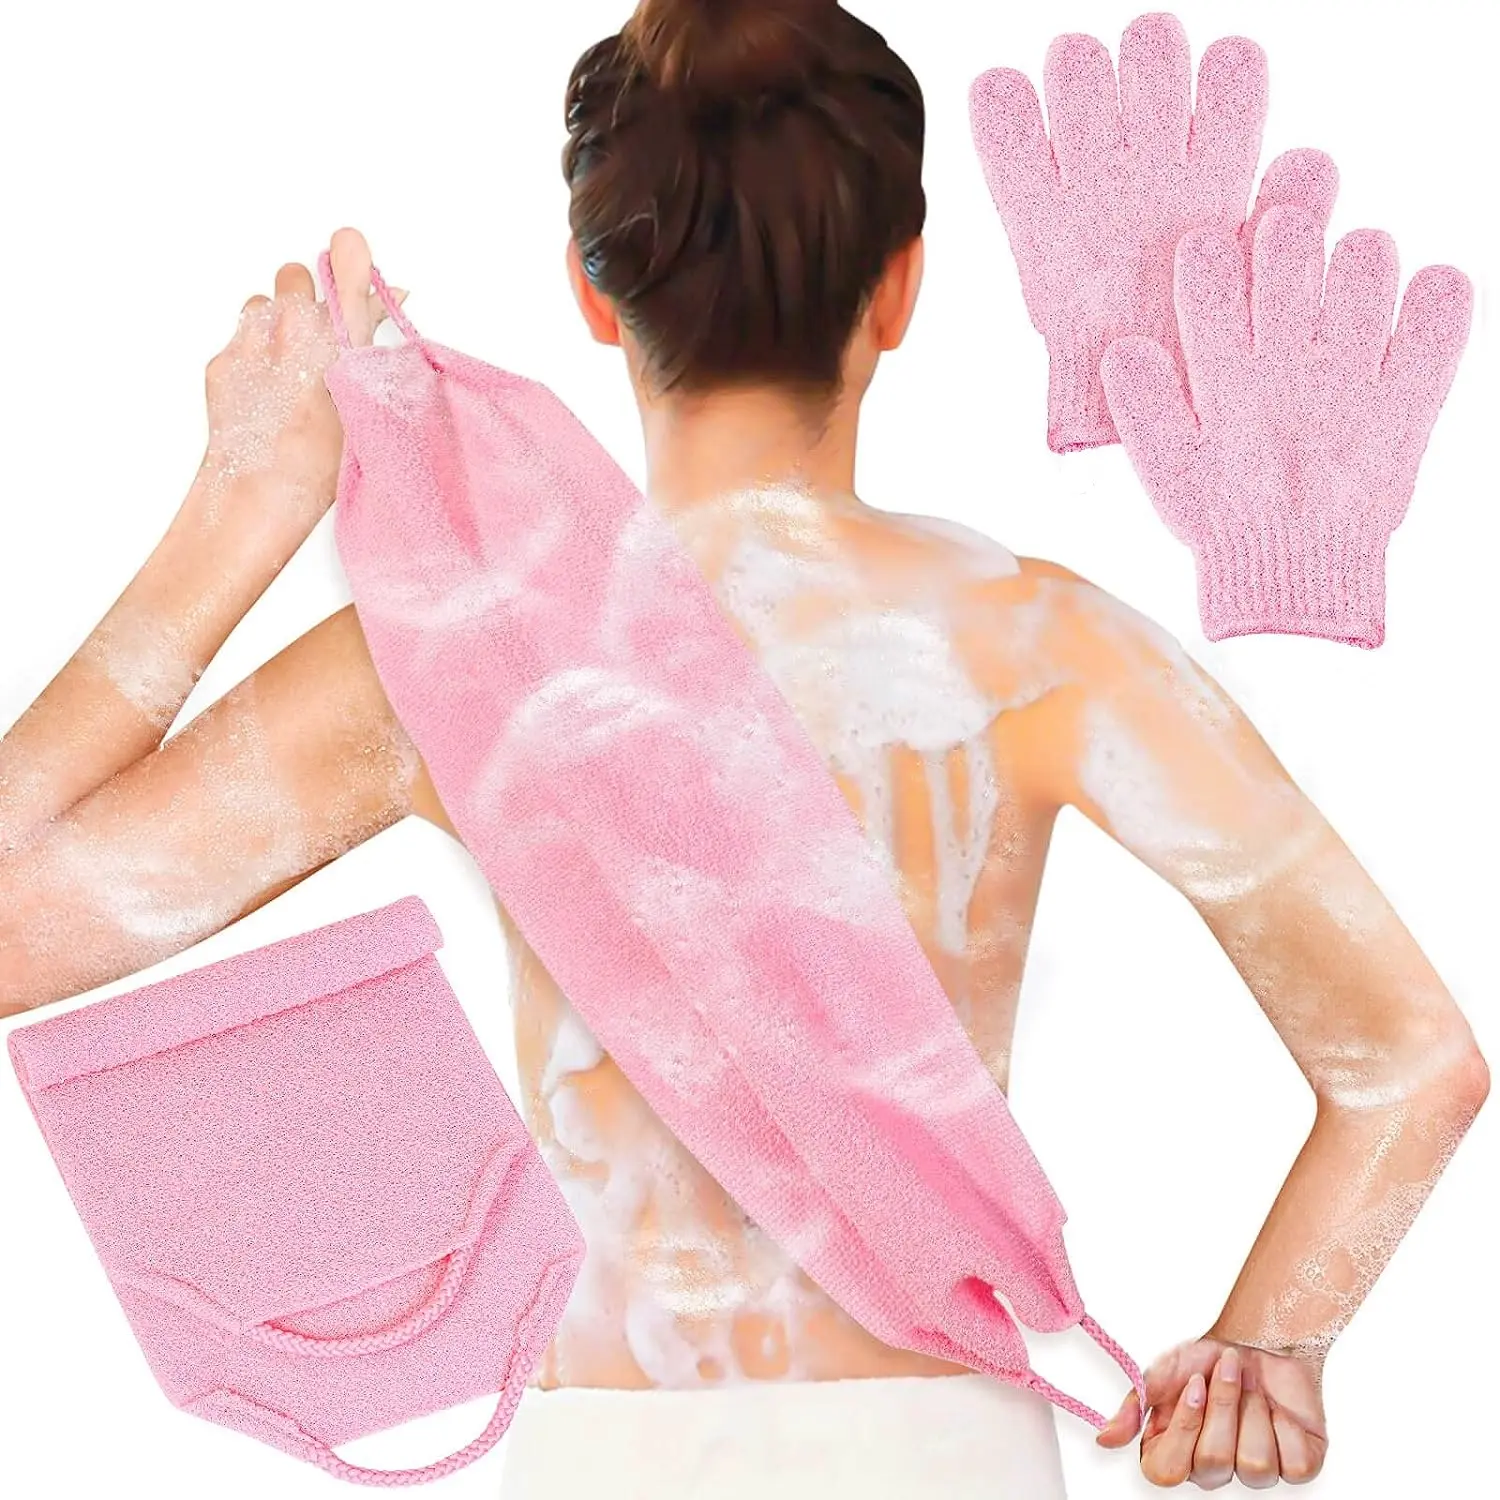 体、顔、シャワー、バス、スクラブ、エクスフォリエーター用の角質除去シャワーバスグローブバックスクラバーセット (ピンク)